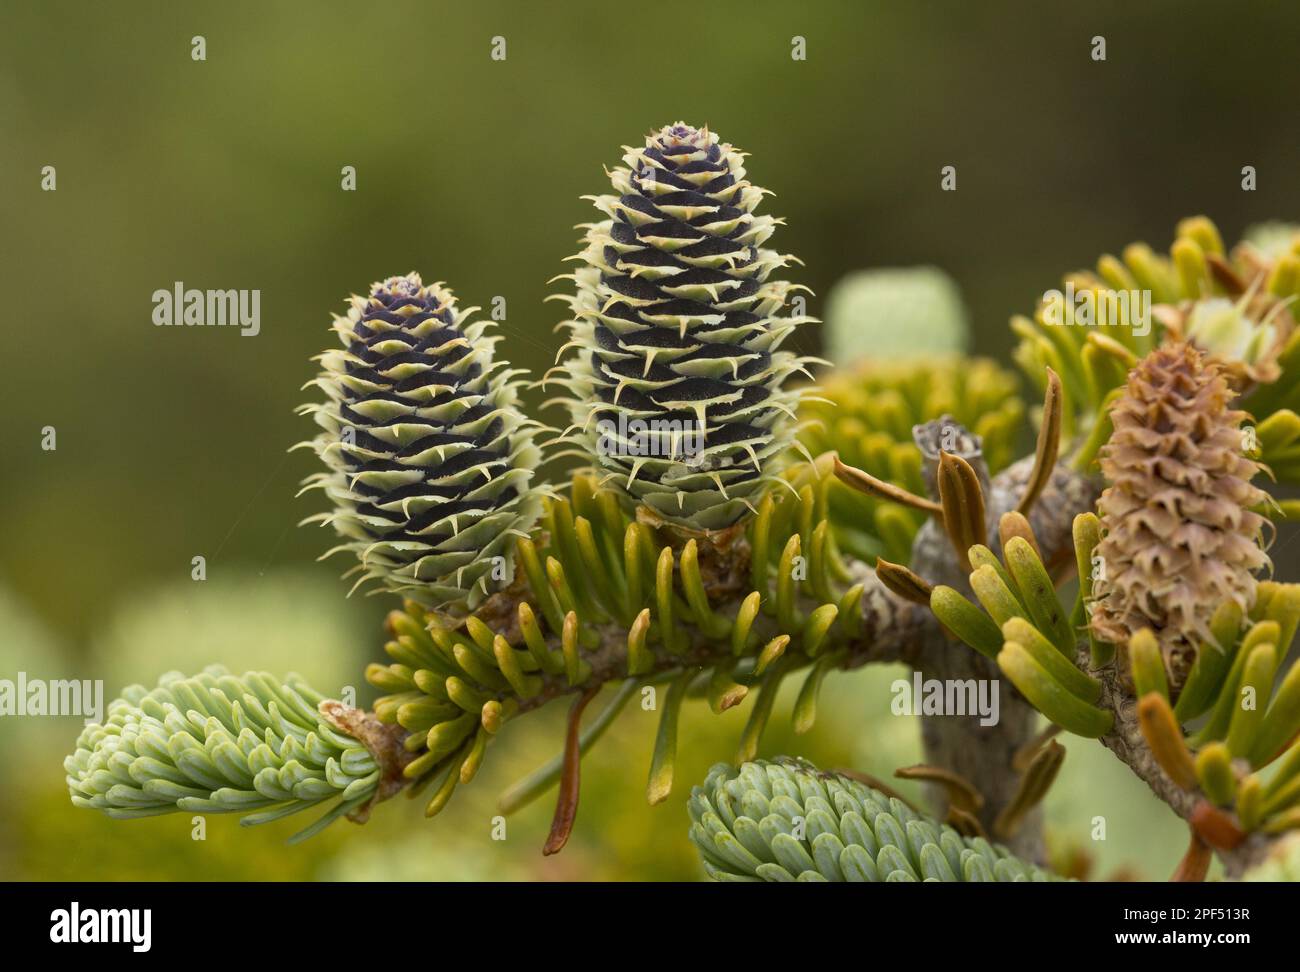 Balsam fir (Abies balsamea) Close-up of female cones, Newfoundland, Canada Stock Photo